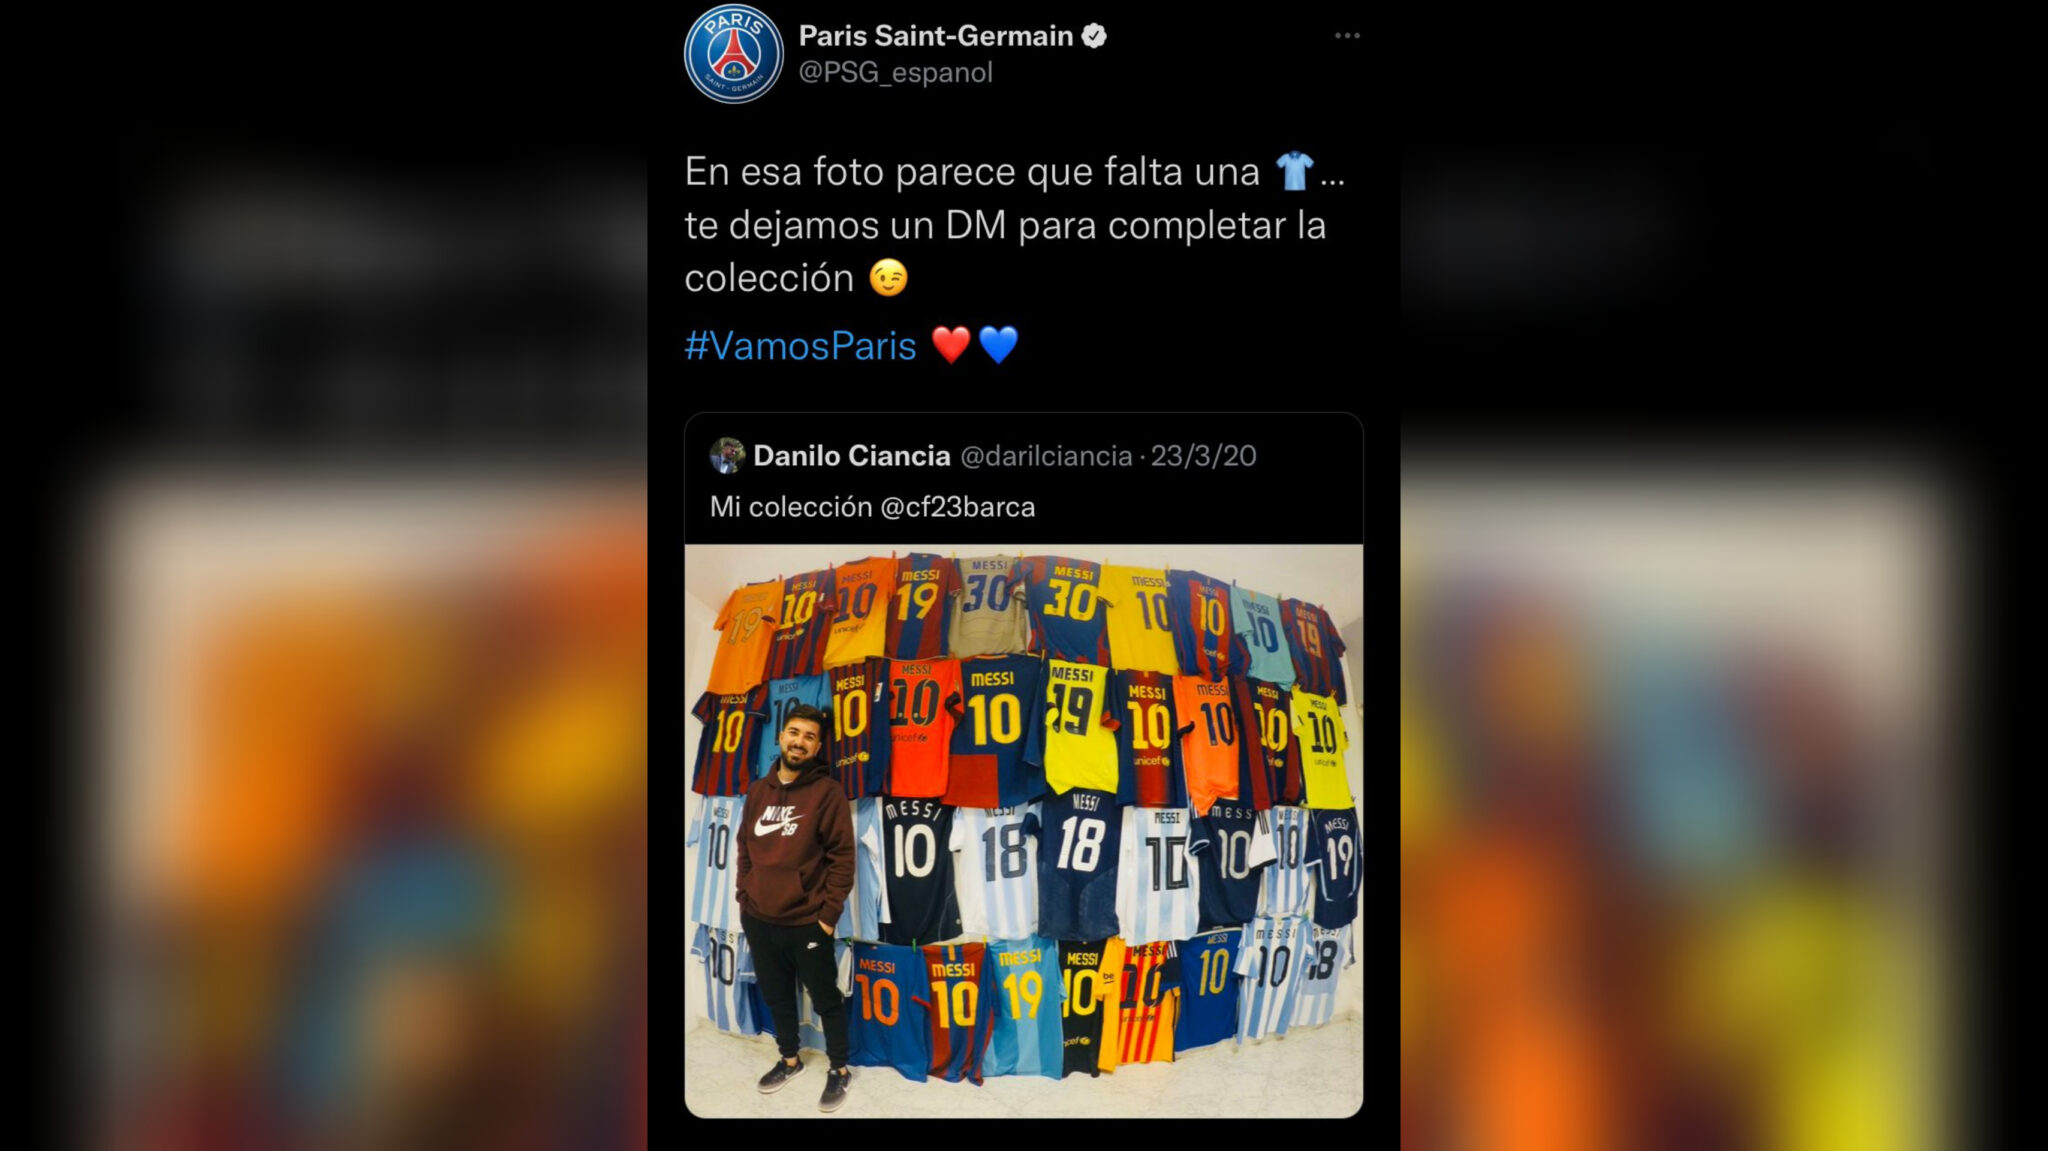 El PSG le prometió a Danilo Ciancia, la camiseta de Messi